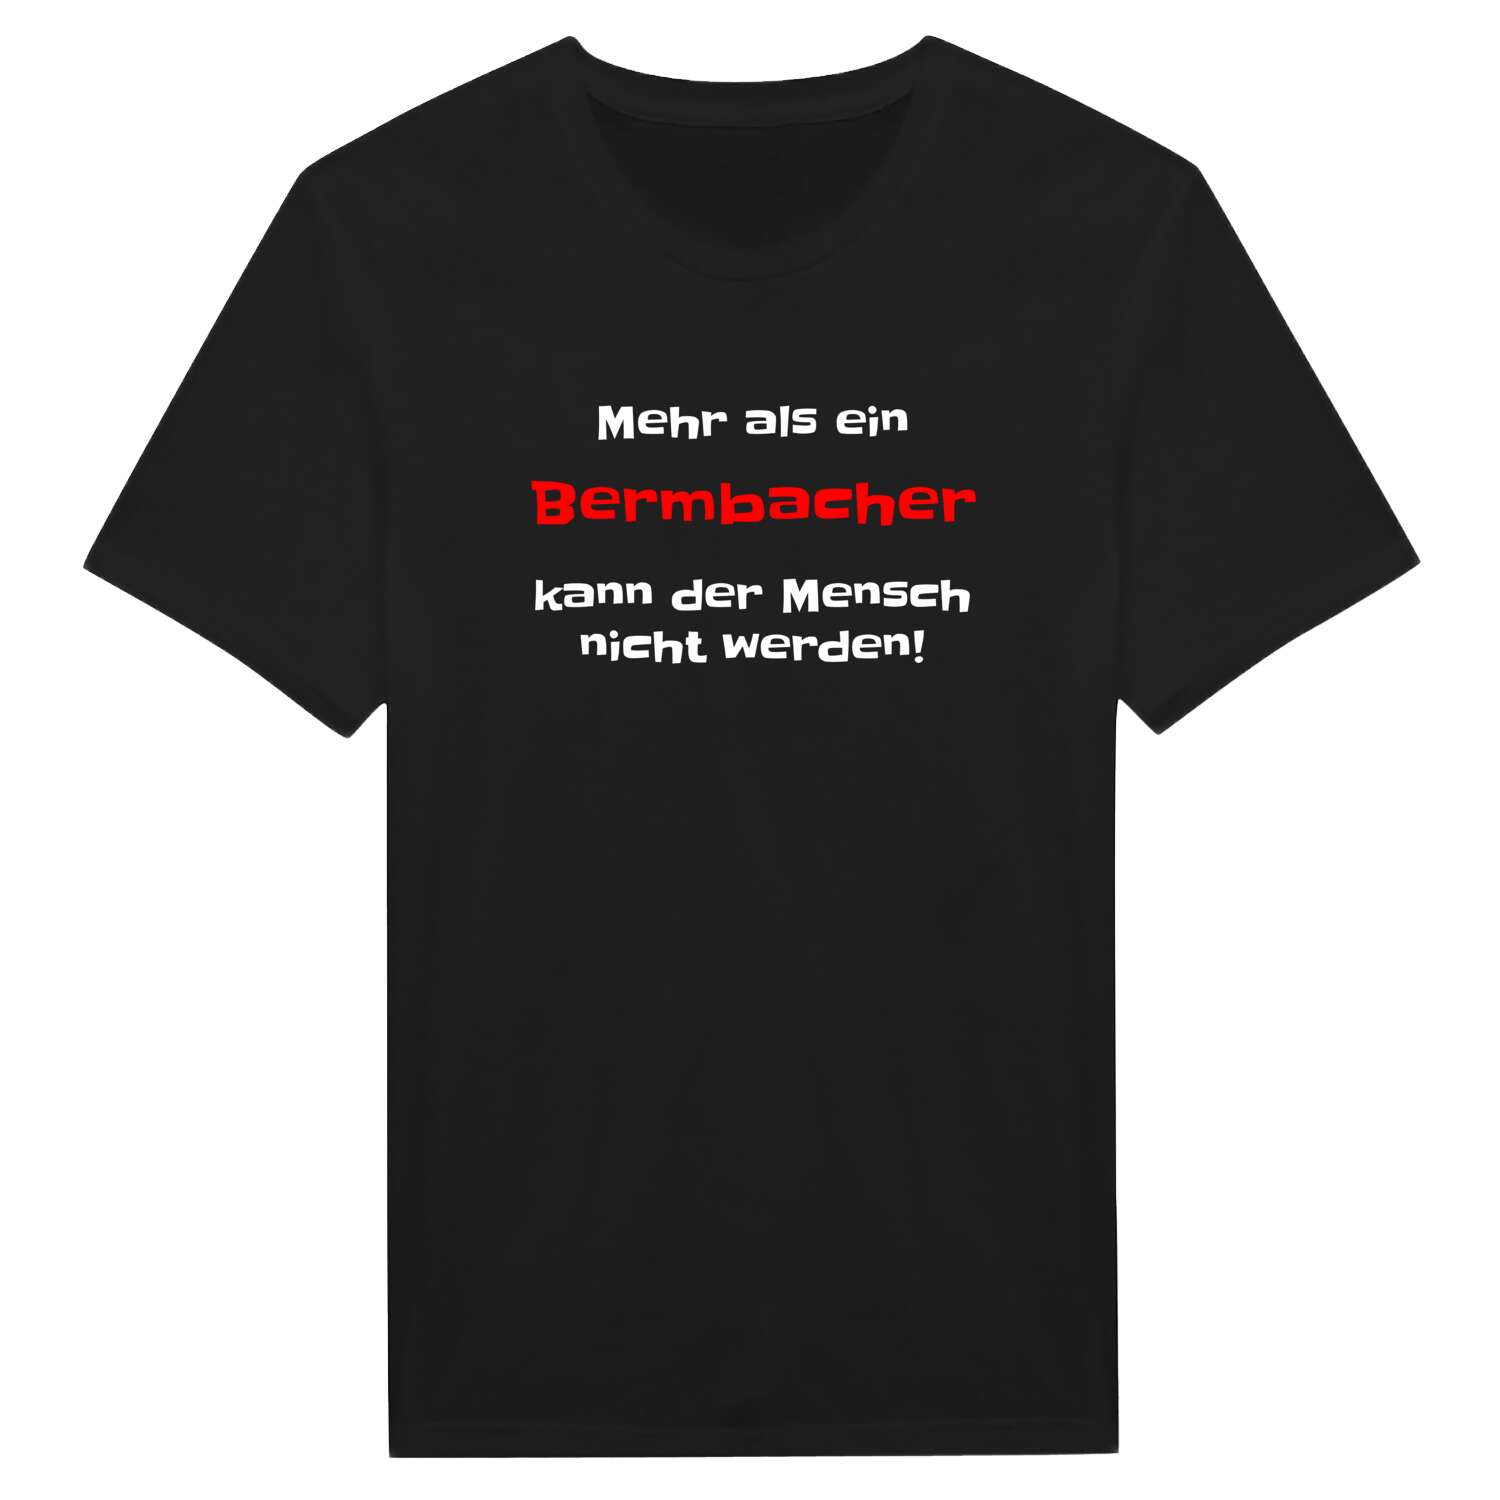 Bermbach T-Shirt »Mehr als ein«